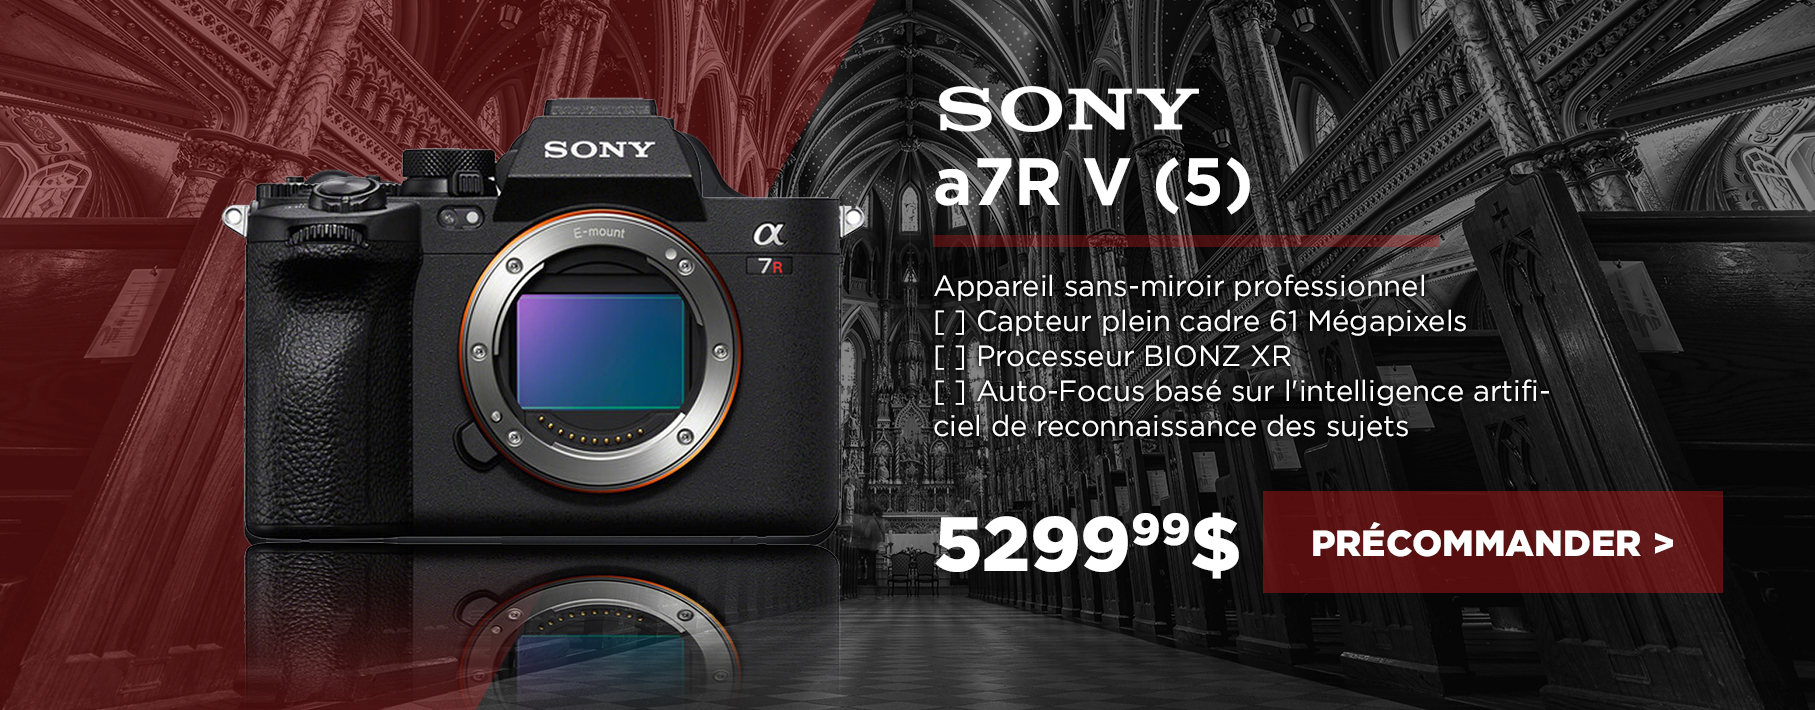 Sony a7r V preorder